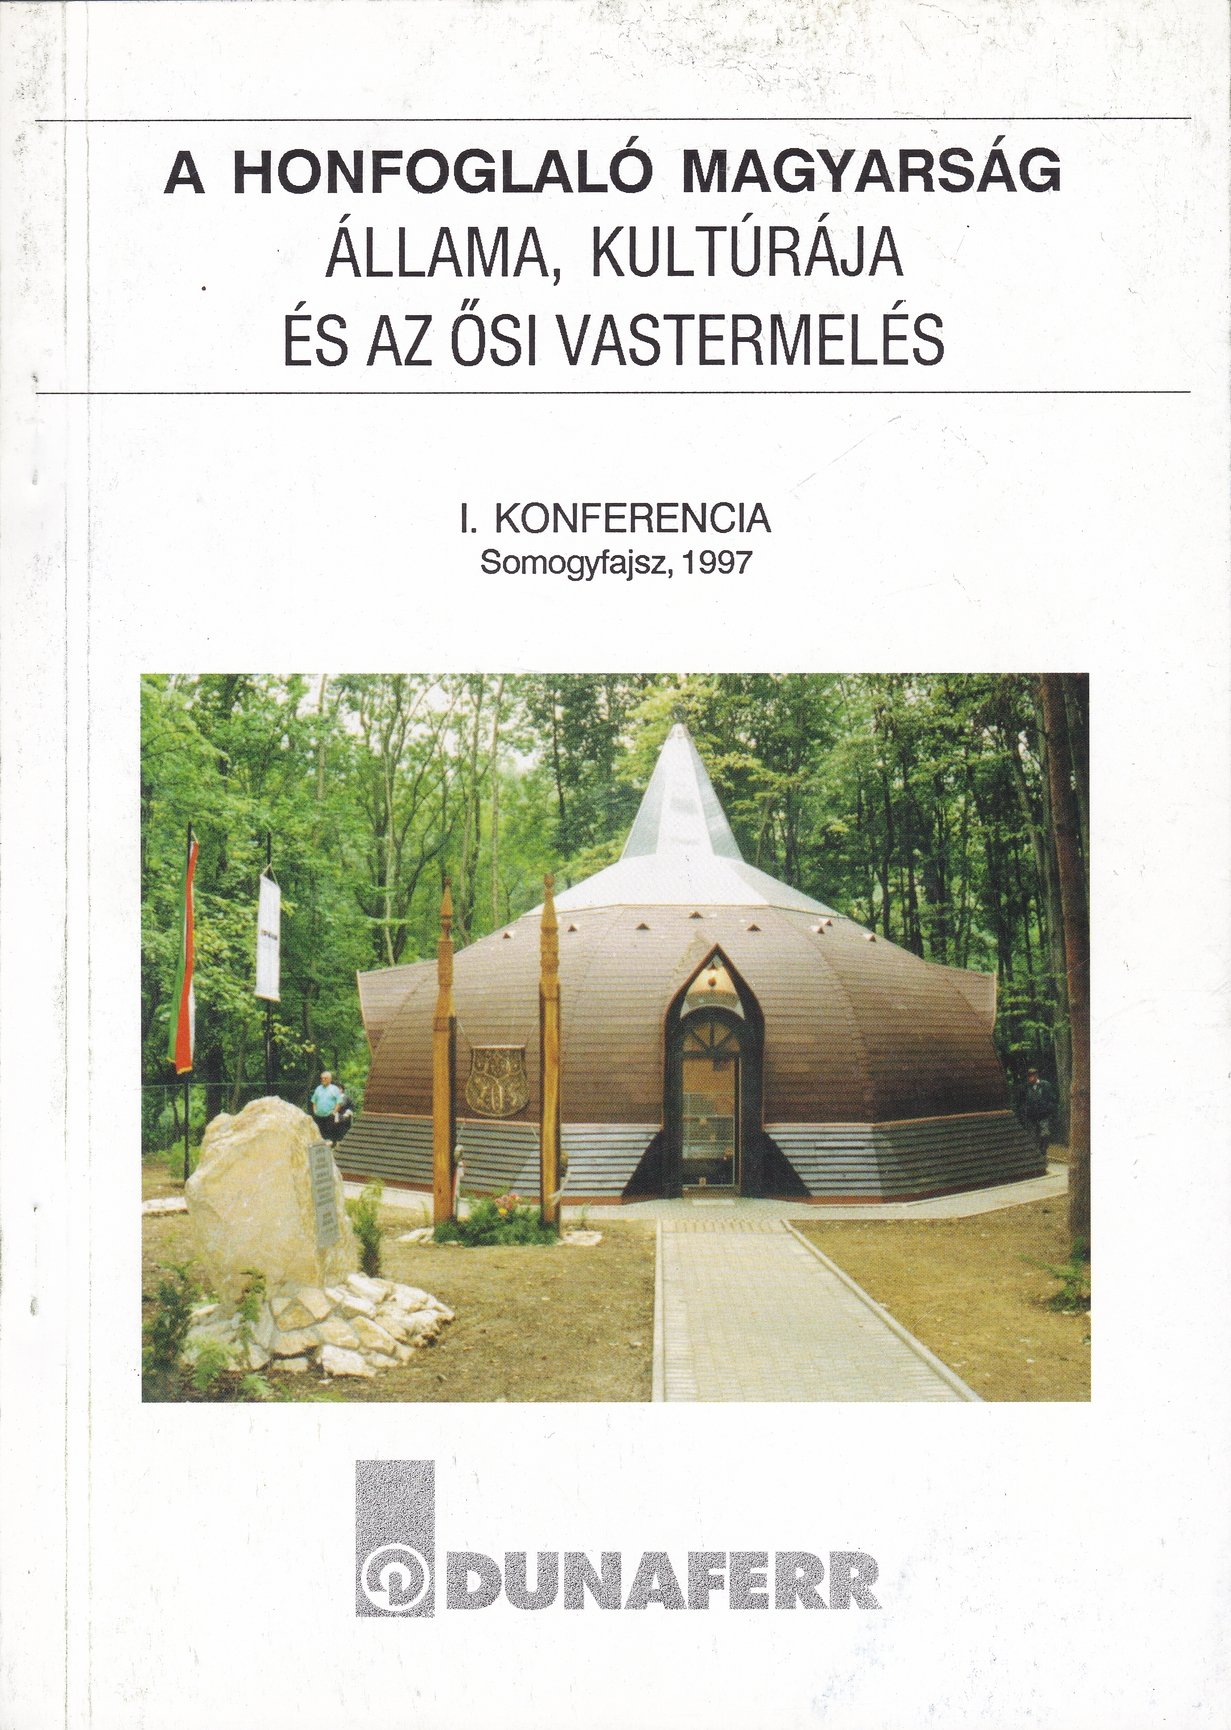 A honfoglaló magyarság állama, kultúrája és az ősi vastermelés. 1. konferencia, Somogyfajsz, 1997 (Rippl-Rónai Múzeum CC BY-NC-ND)